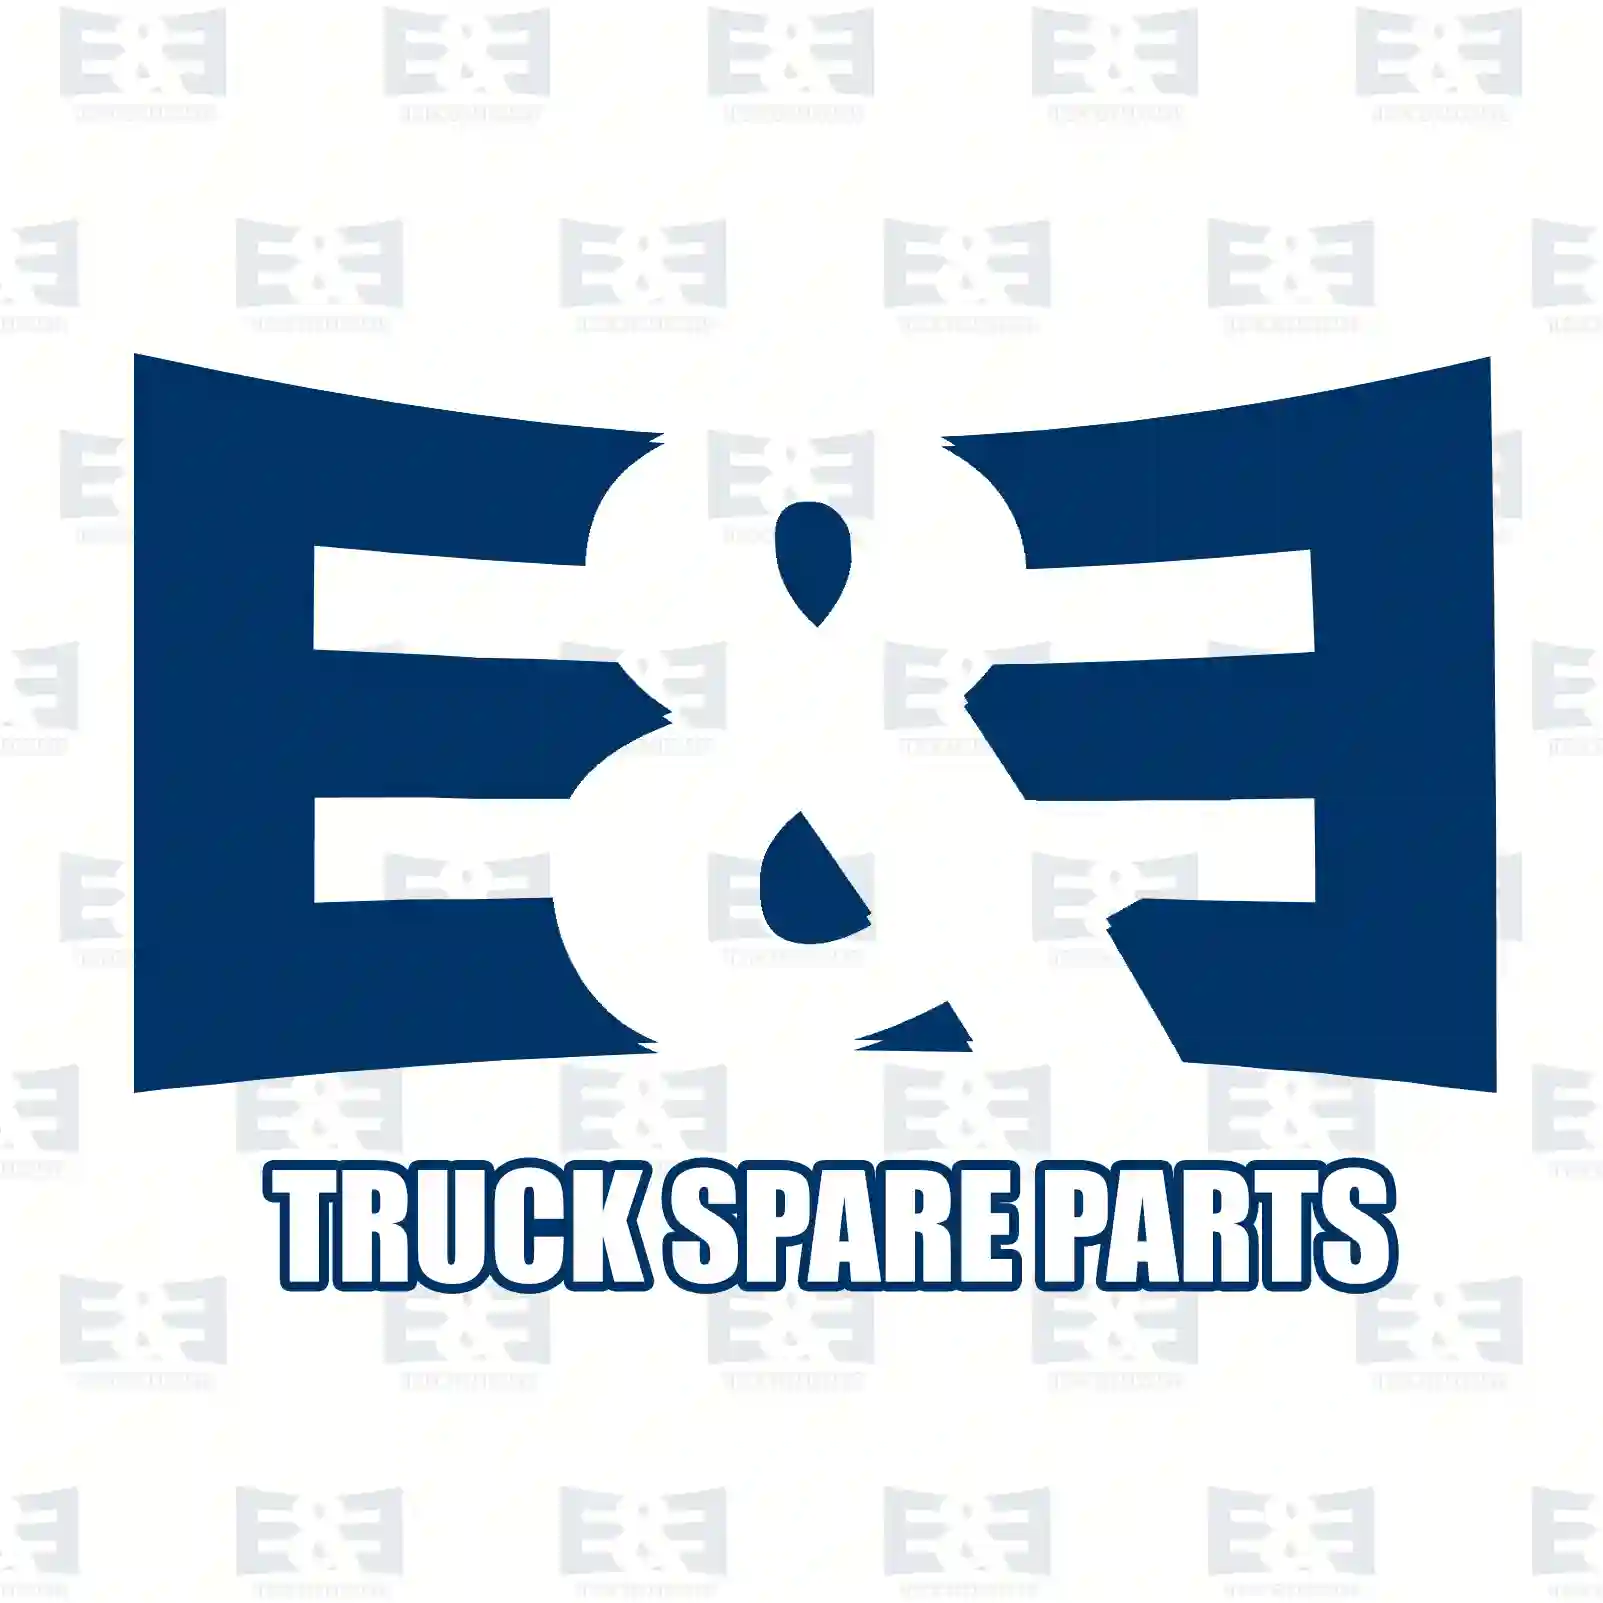 Toggle switch, 2E2298582, 1319793, 1333287, 1339016 ||  2E2298582 E&E Truck Spare Parts | Truck Spare Parts, Auotomotive Spare Parts Toggle switch, 2E2298582, 1319793, 1333287, 1339016 ||  2E2298582 E&E Truck Spare Parts | Truck Spare Parts, Auotomotive Spare Parts